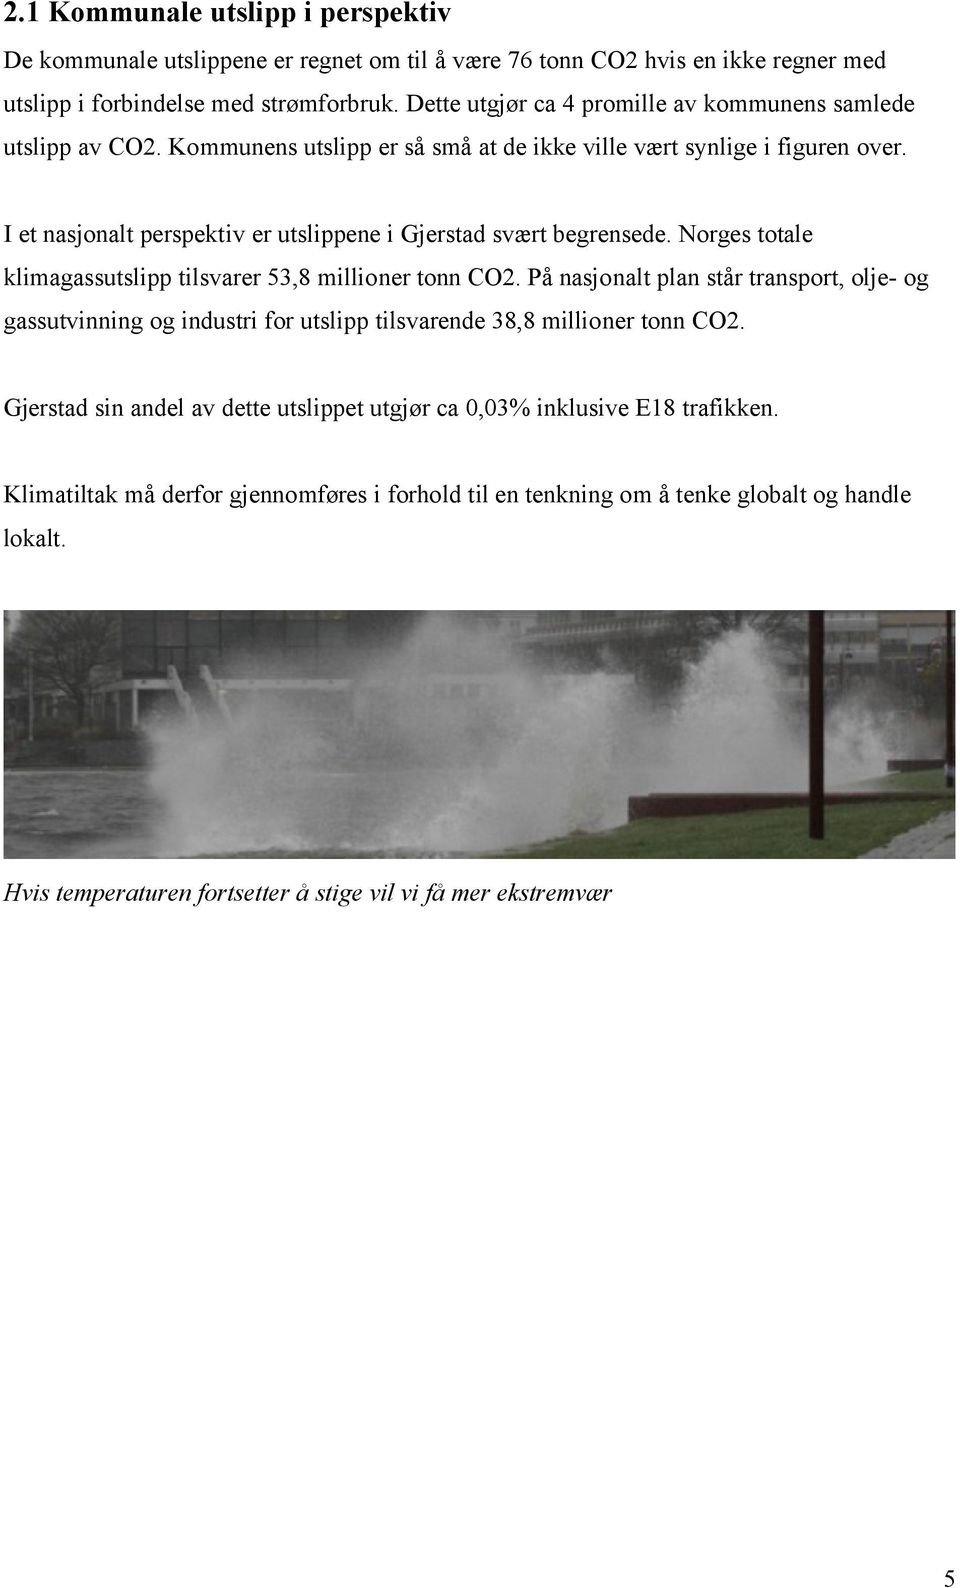 I et nasjonalt perspektiv er utslippene i Gjerstad svært begrensede. Norges totale klimagassutslipp tilsvarer 53,8 millioner tonn CO2.